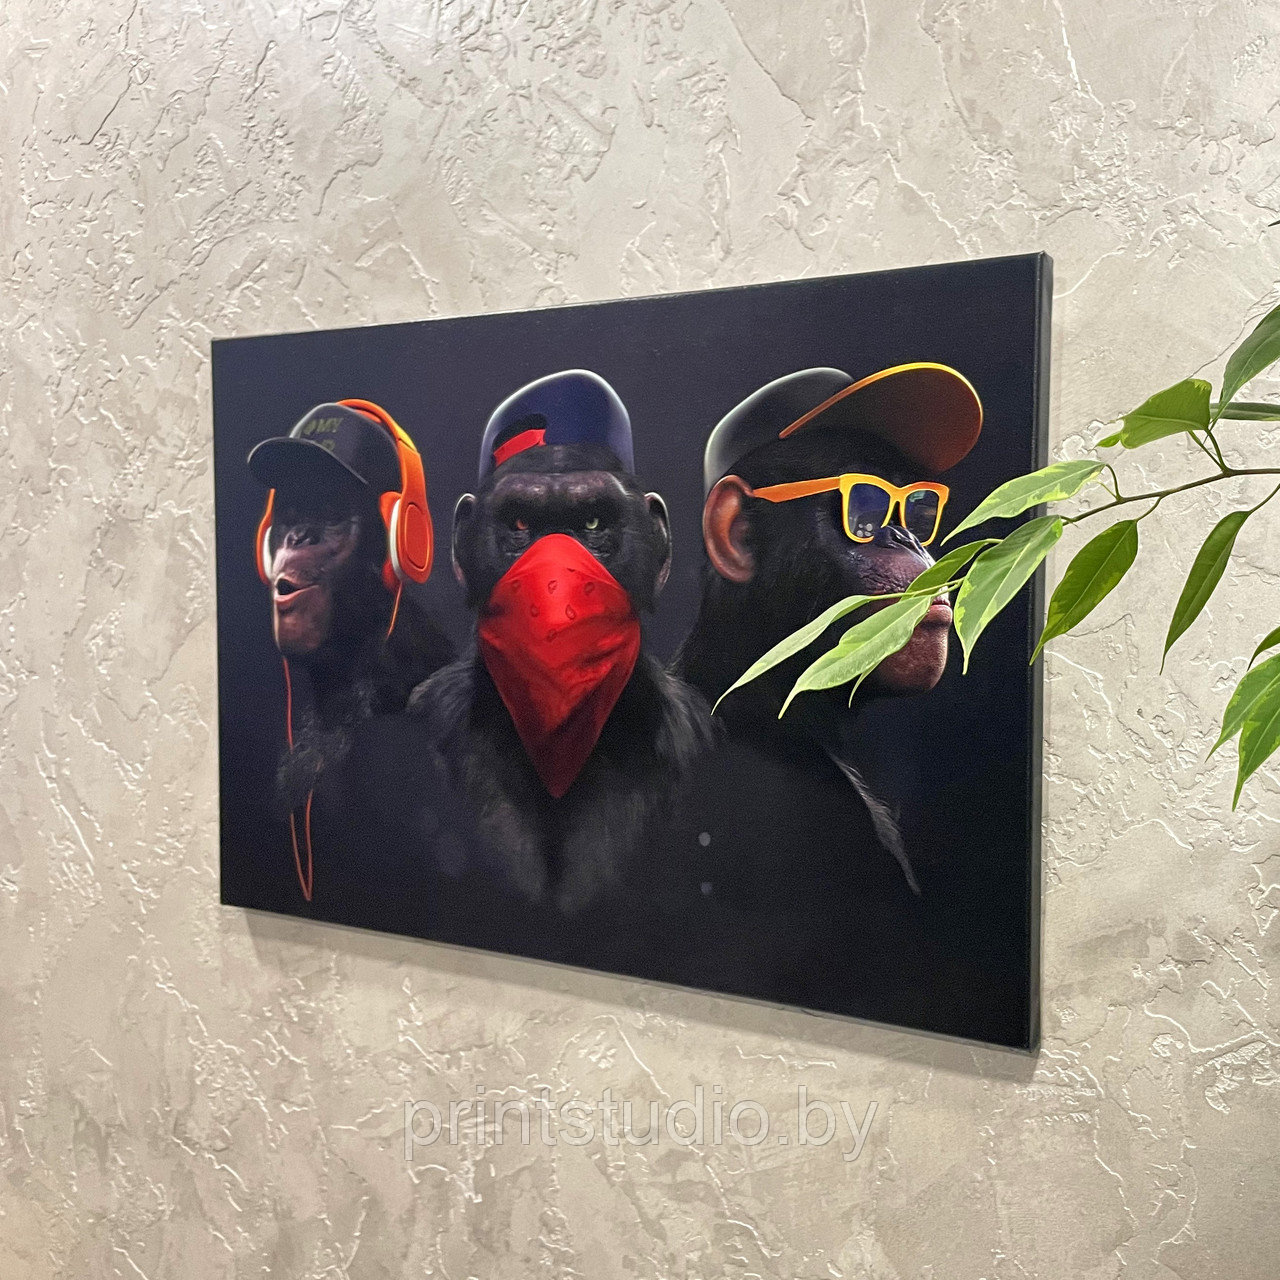 Картина на холсте "Trio Monkeys", 800*500 мм